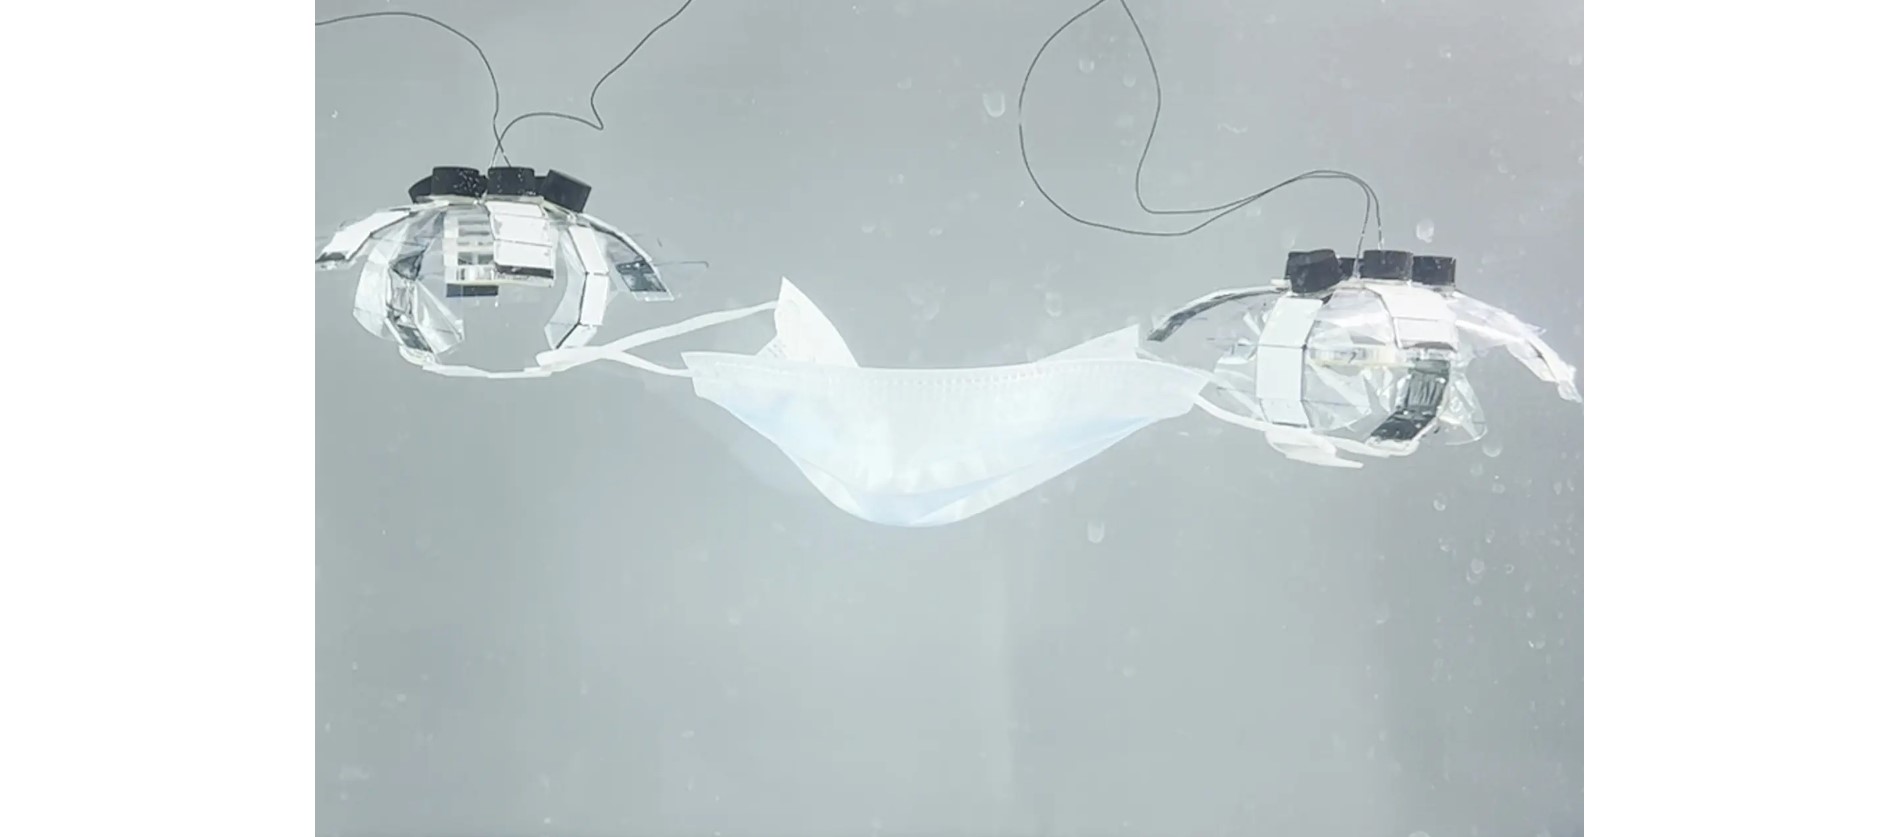 Созданы роботы-медузы для очистки океана и коралловых рифов от мусора